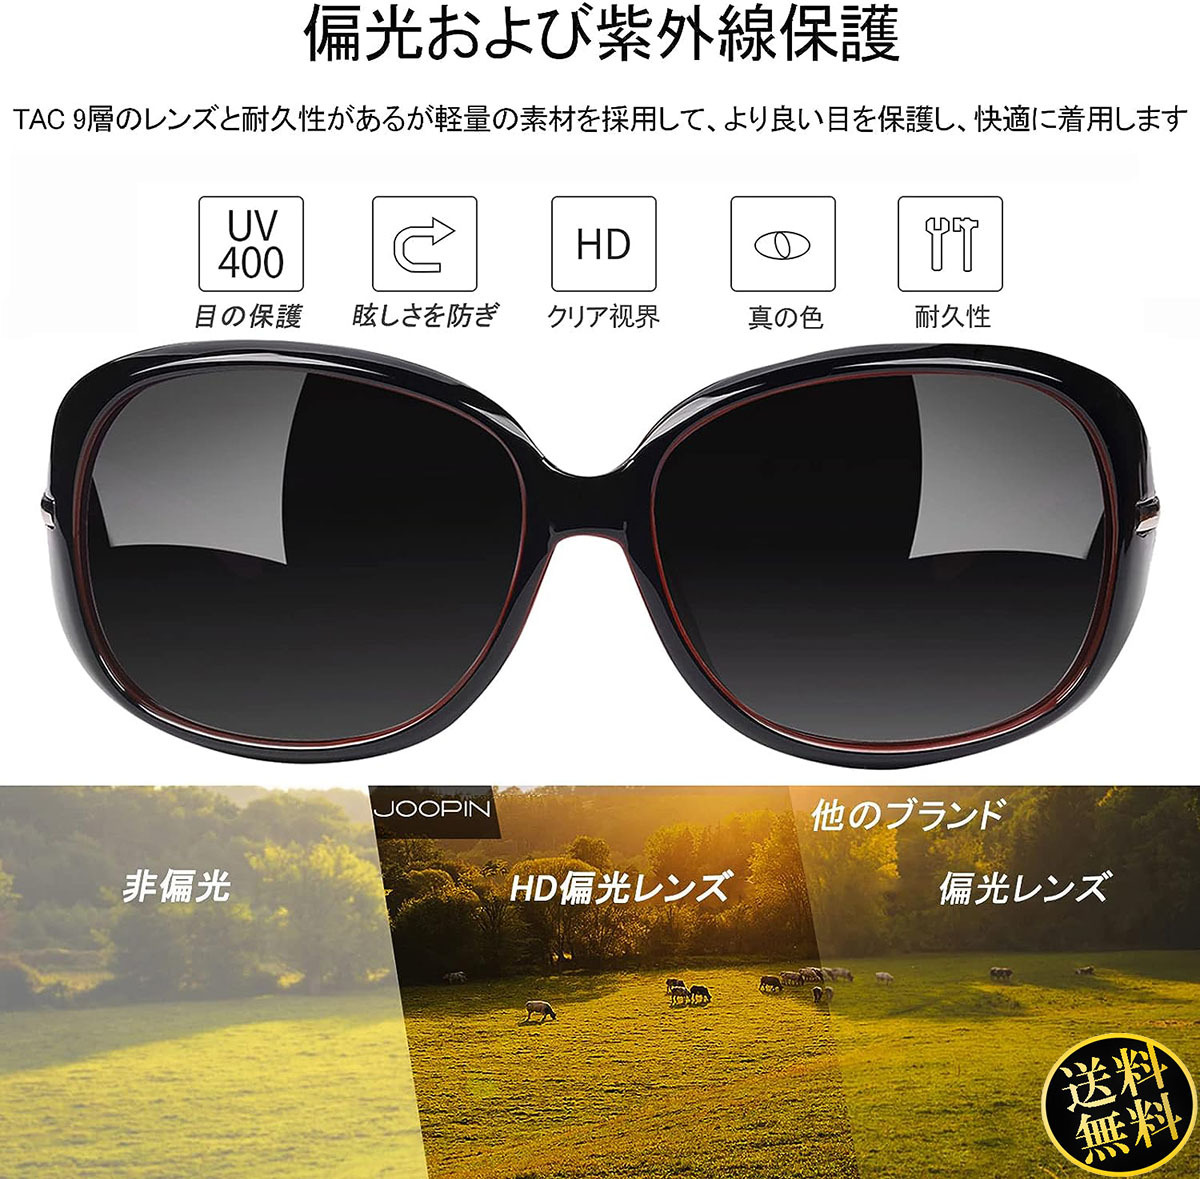 【耳や鼻への負担を大幅に軽減】 サングラス ブラック×レッド 偏光レンズ UV400カット ラインストーン ファッション レディース